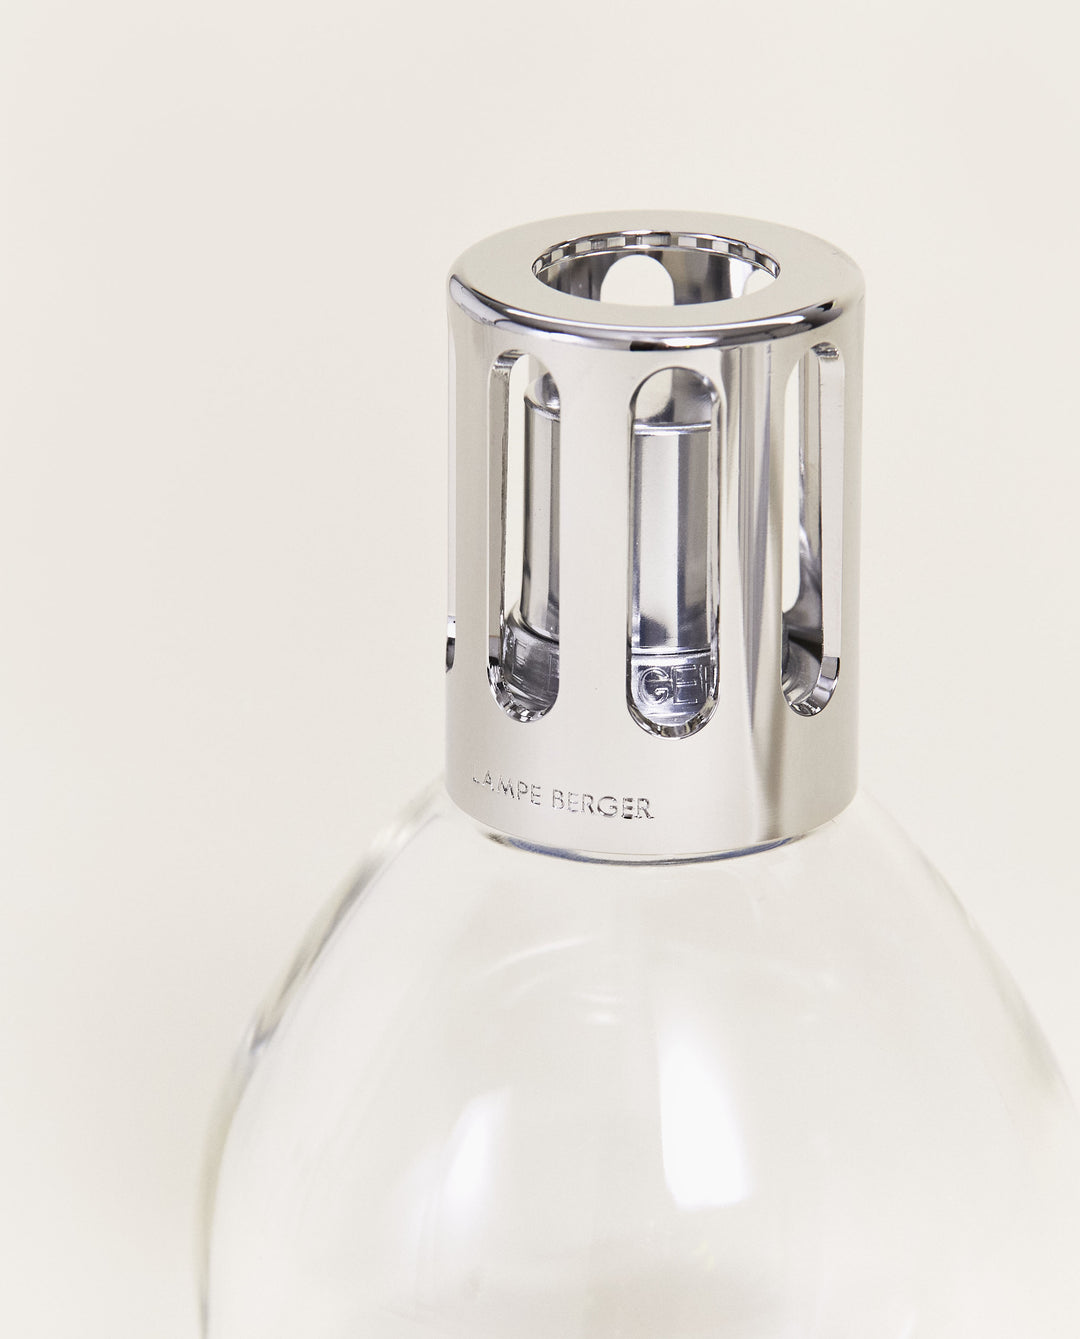 Lampe Berger Essentielle Oval - Zitronen-Verbene & AIR PUR Neutral Lampe Berger - Maison Berger offizieller Onlineshop DE - AT